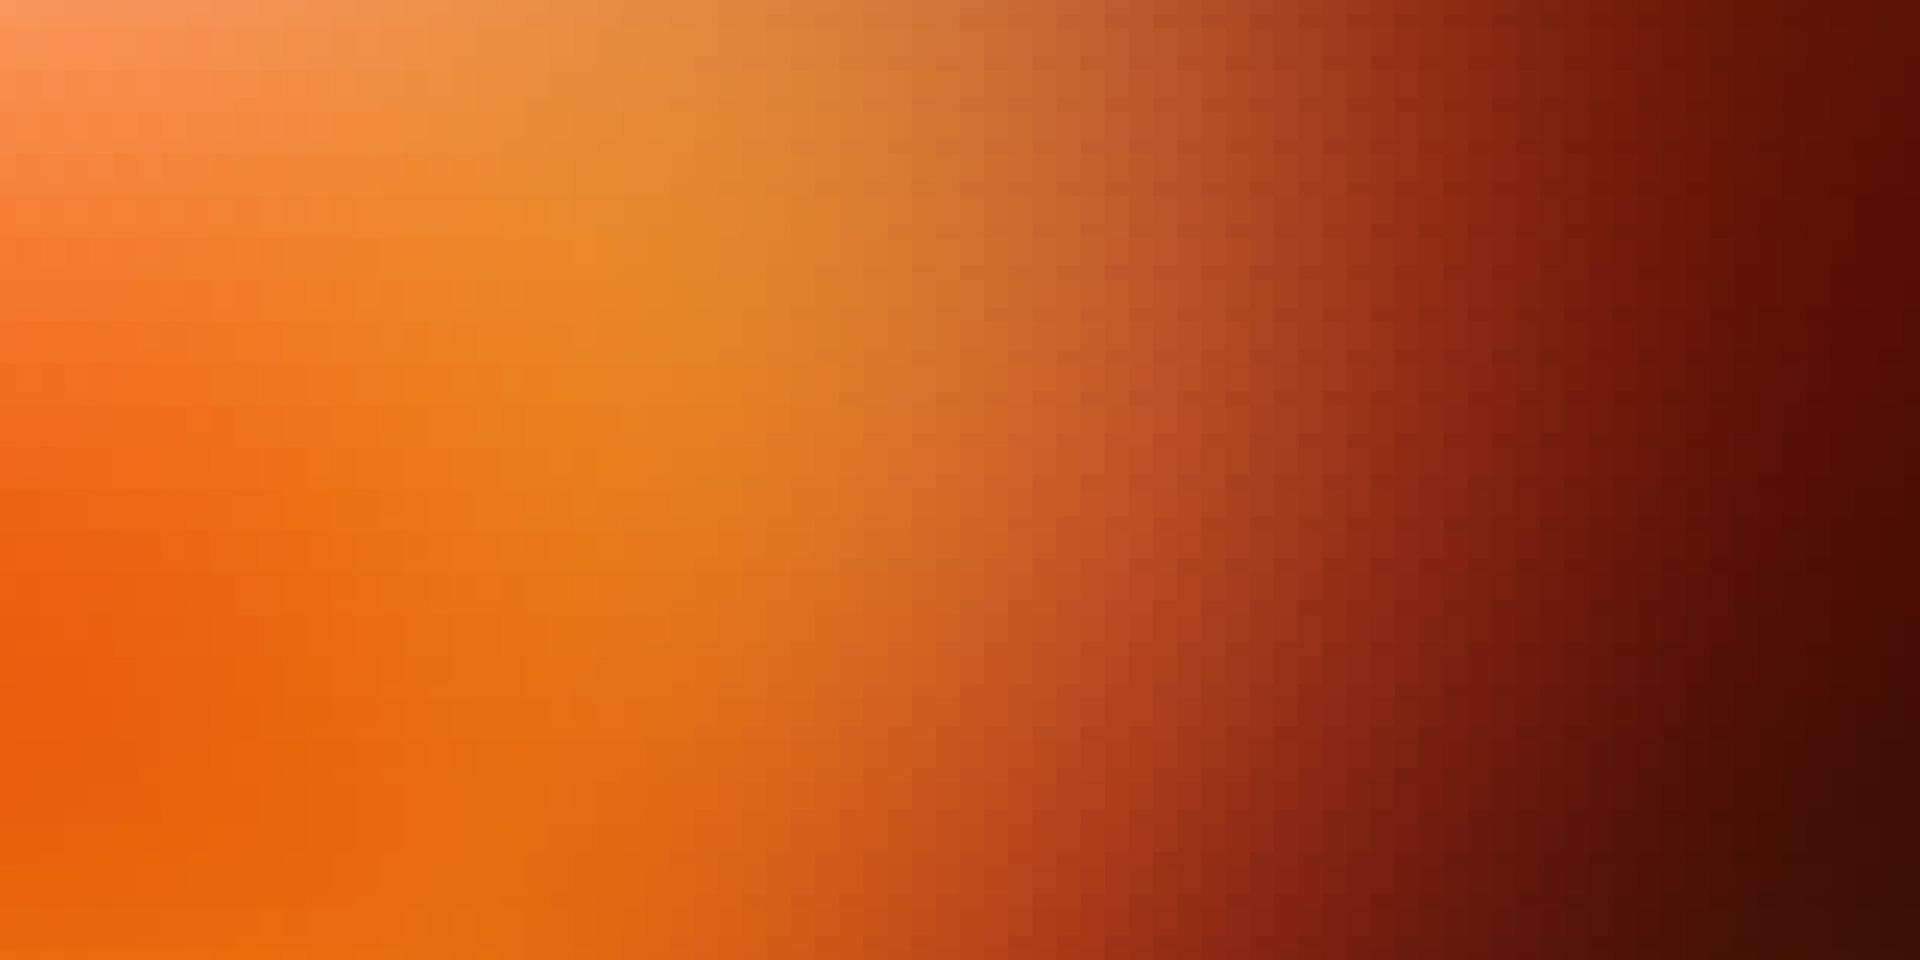 diseño de vector naranja claro con líneas, rectángulos.